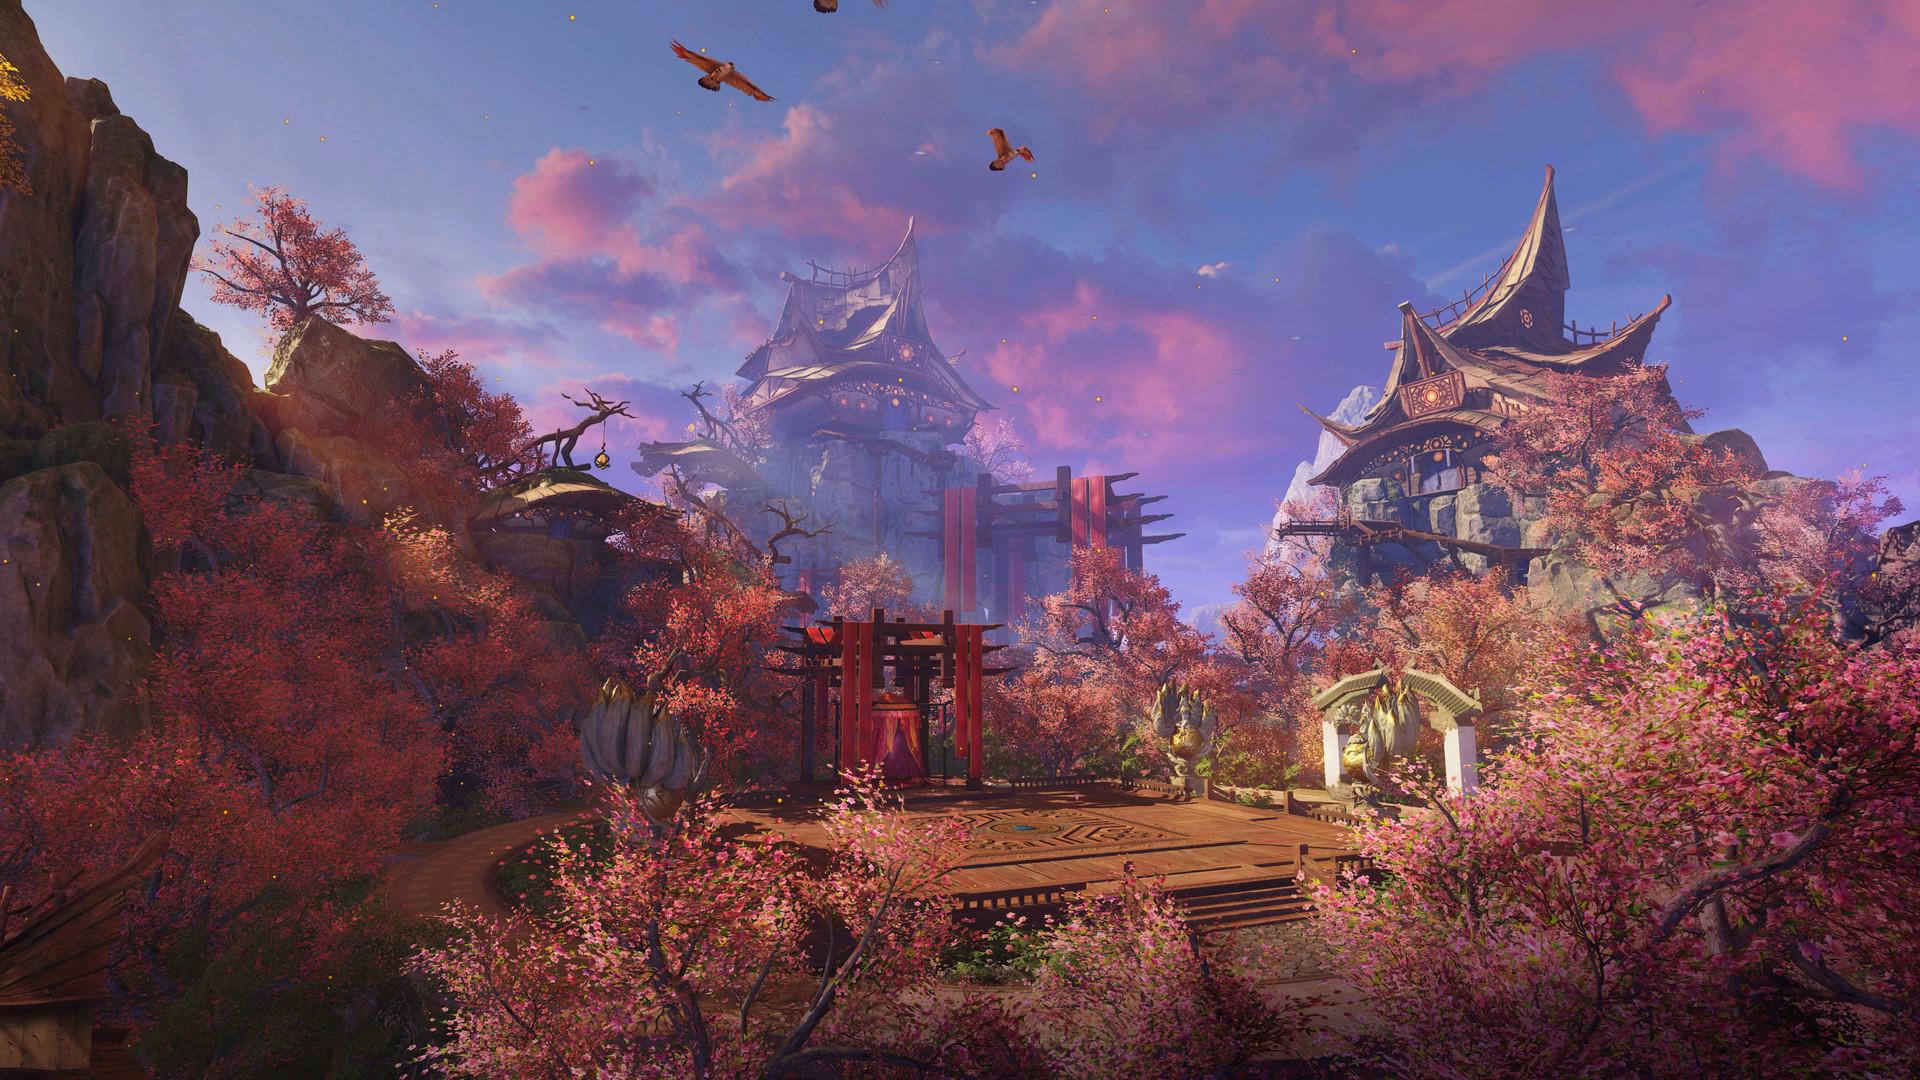 Screenshot №17 from game Swords of Legends Online